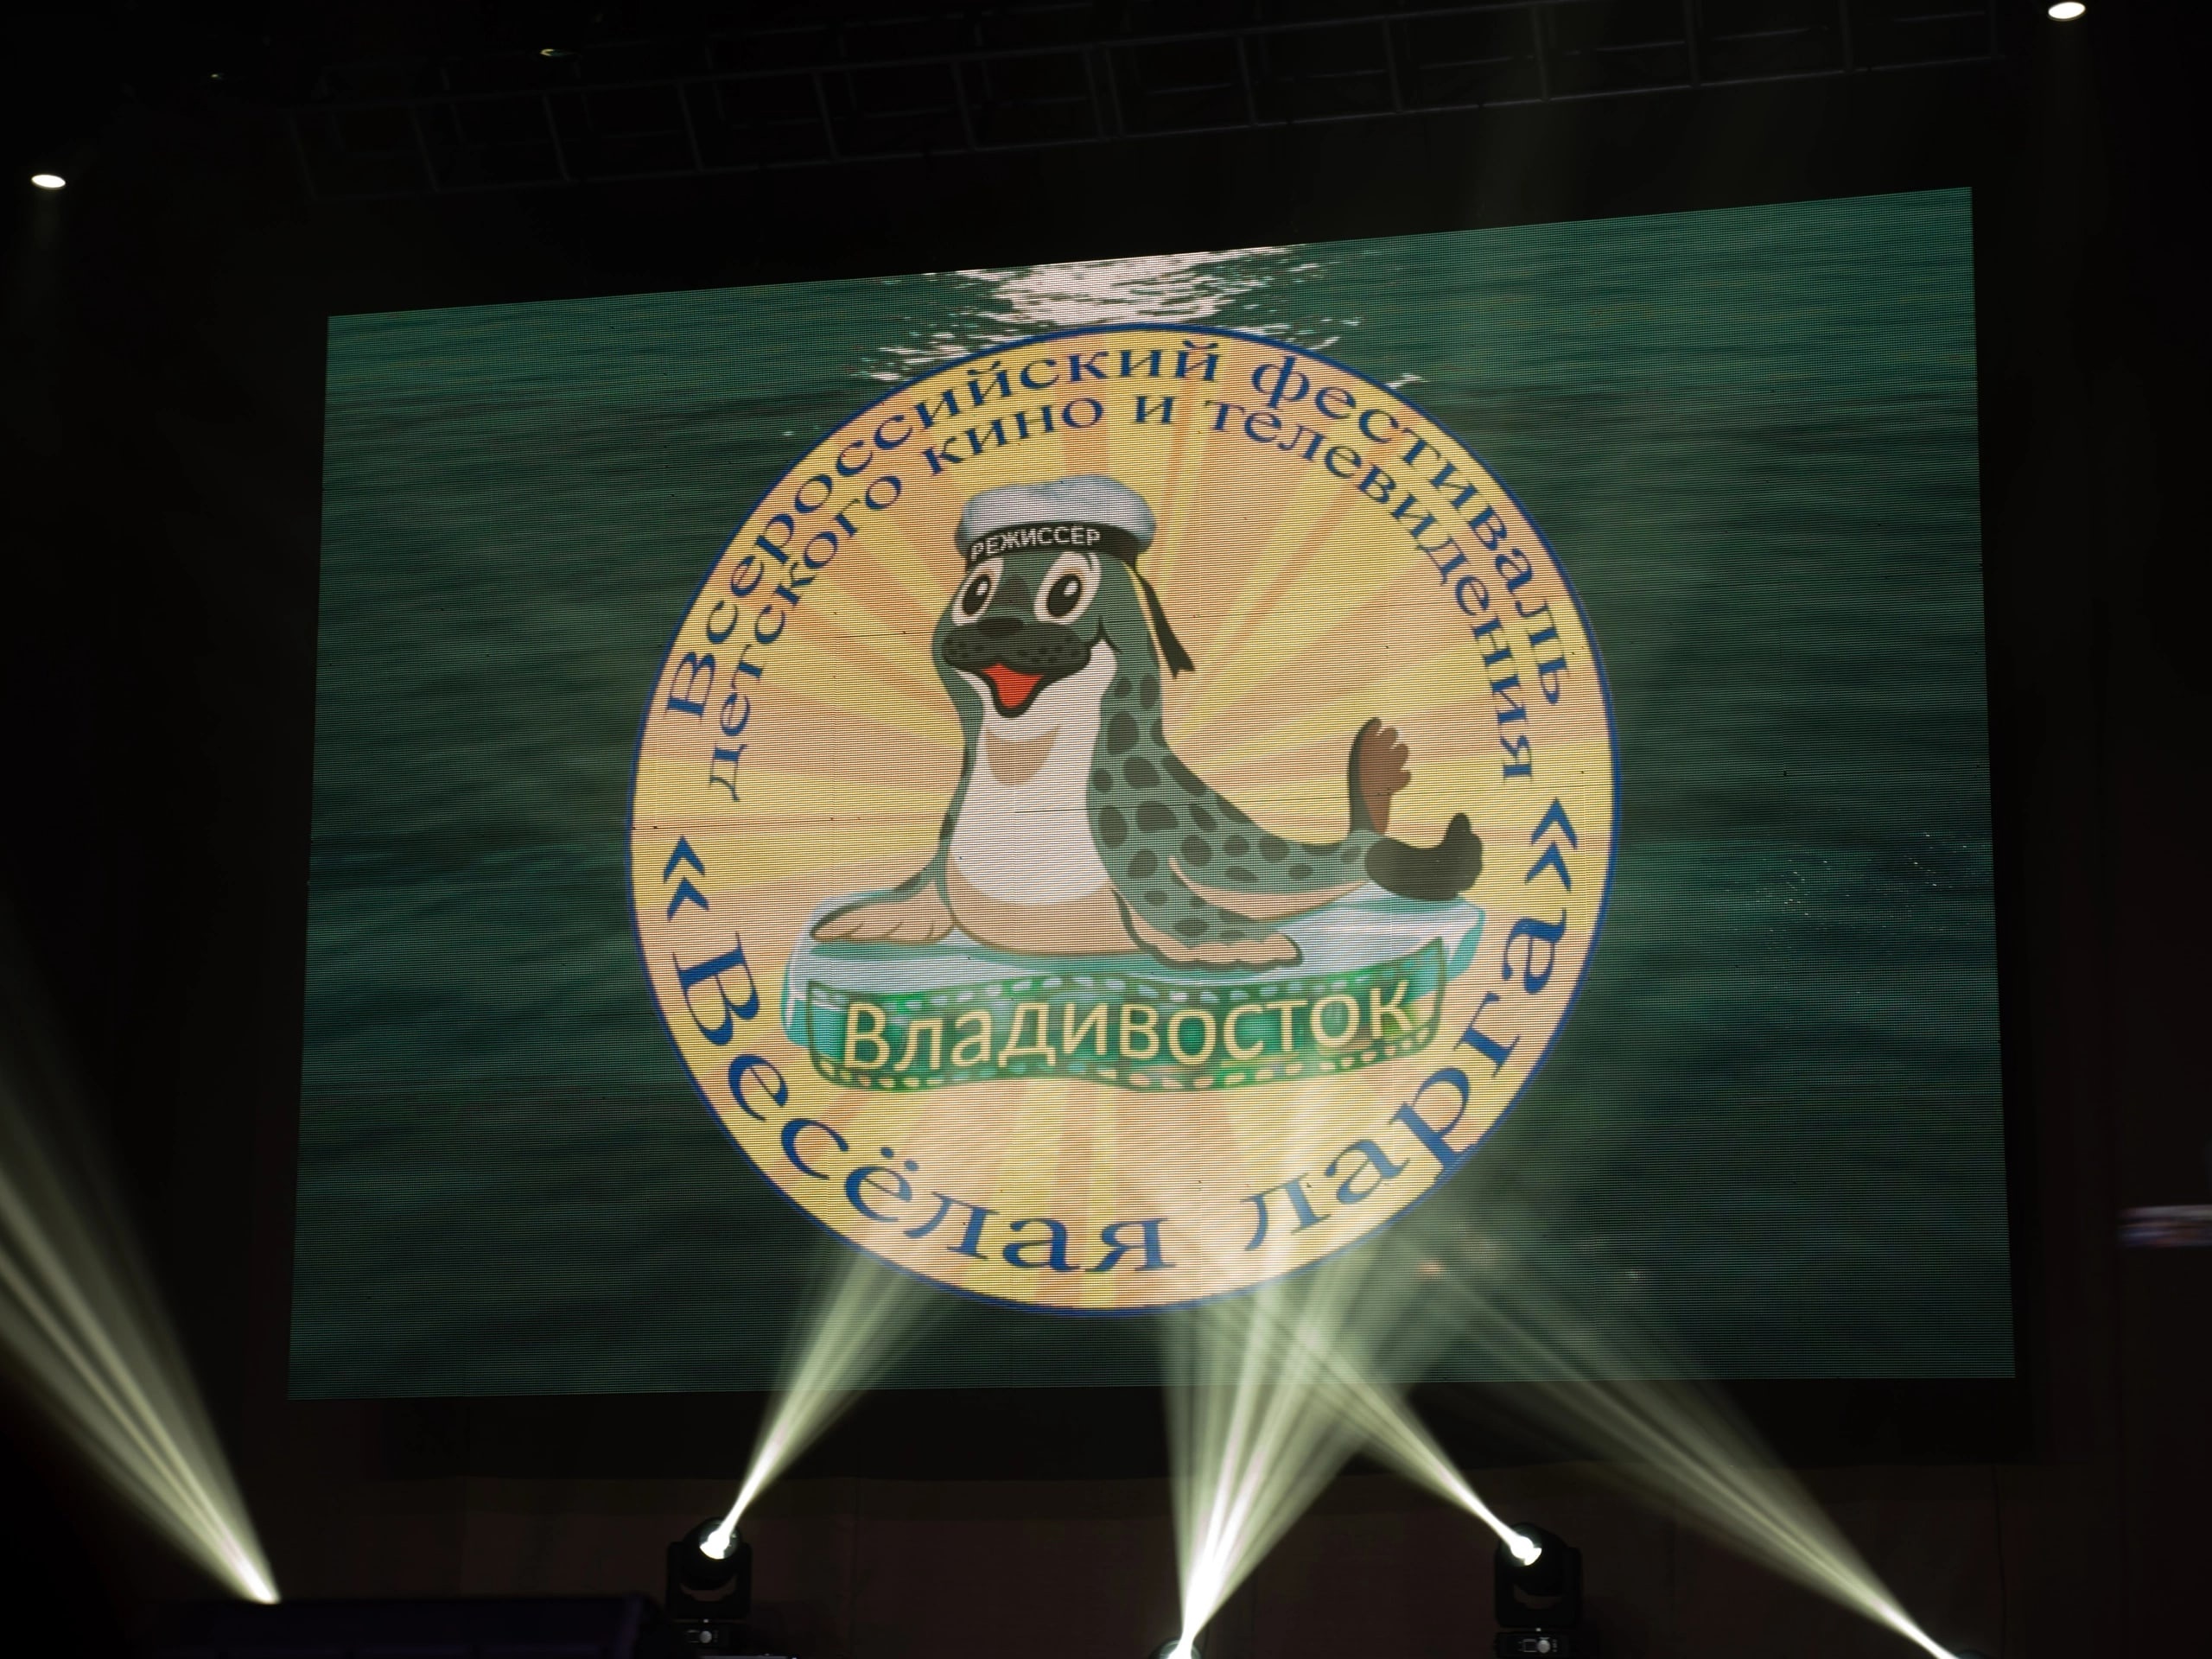 Ивановцы получили награды Всероссийского фестиваля детского кино и телевидения во Владивостоке